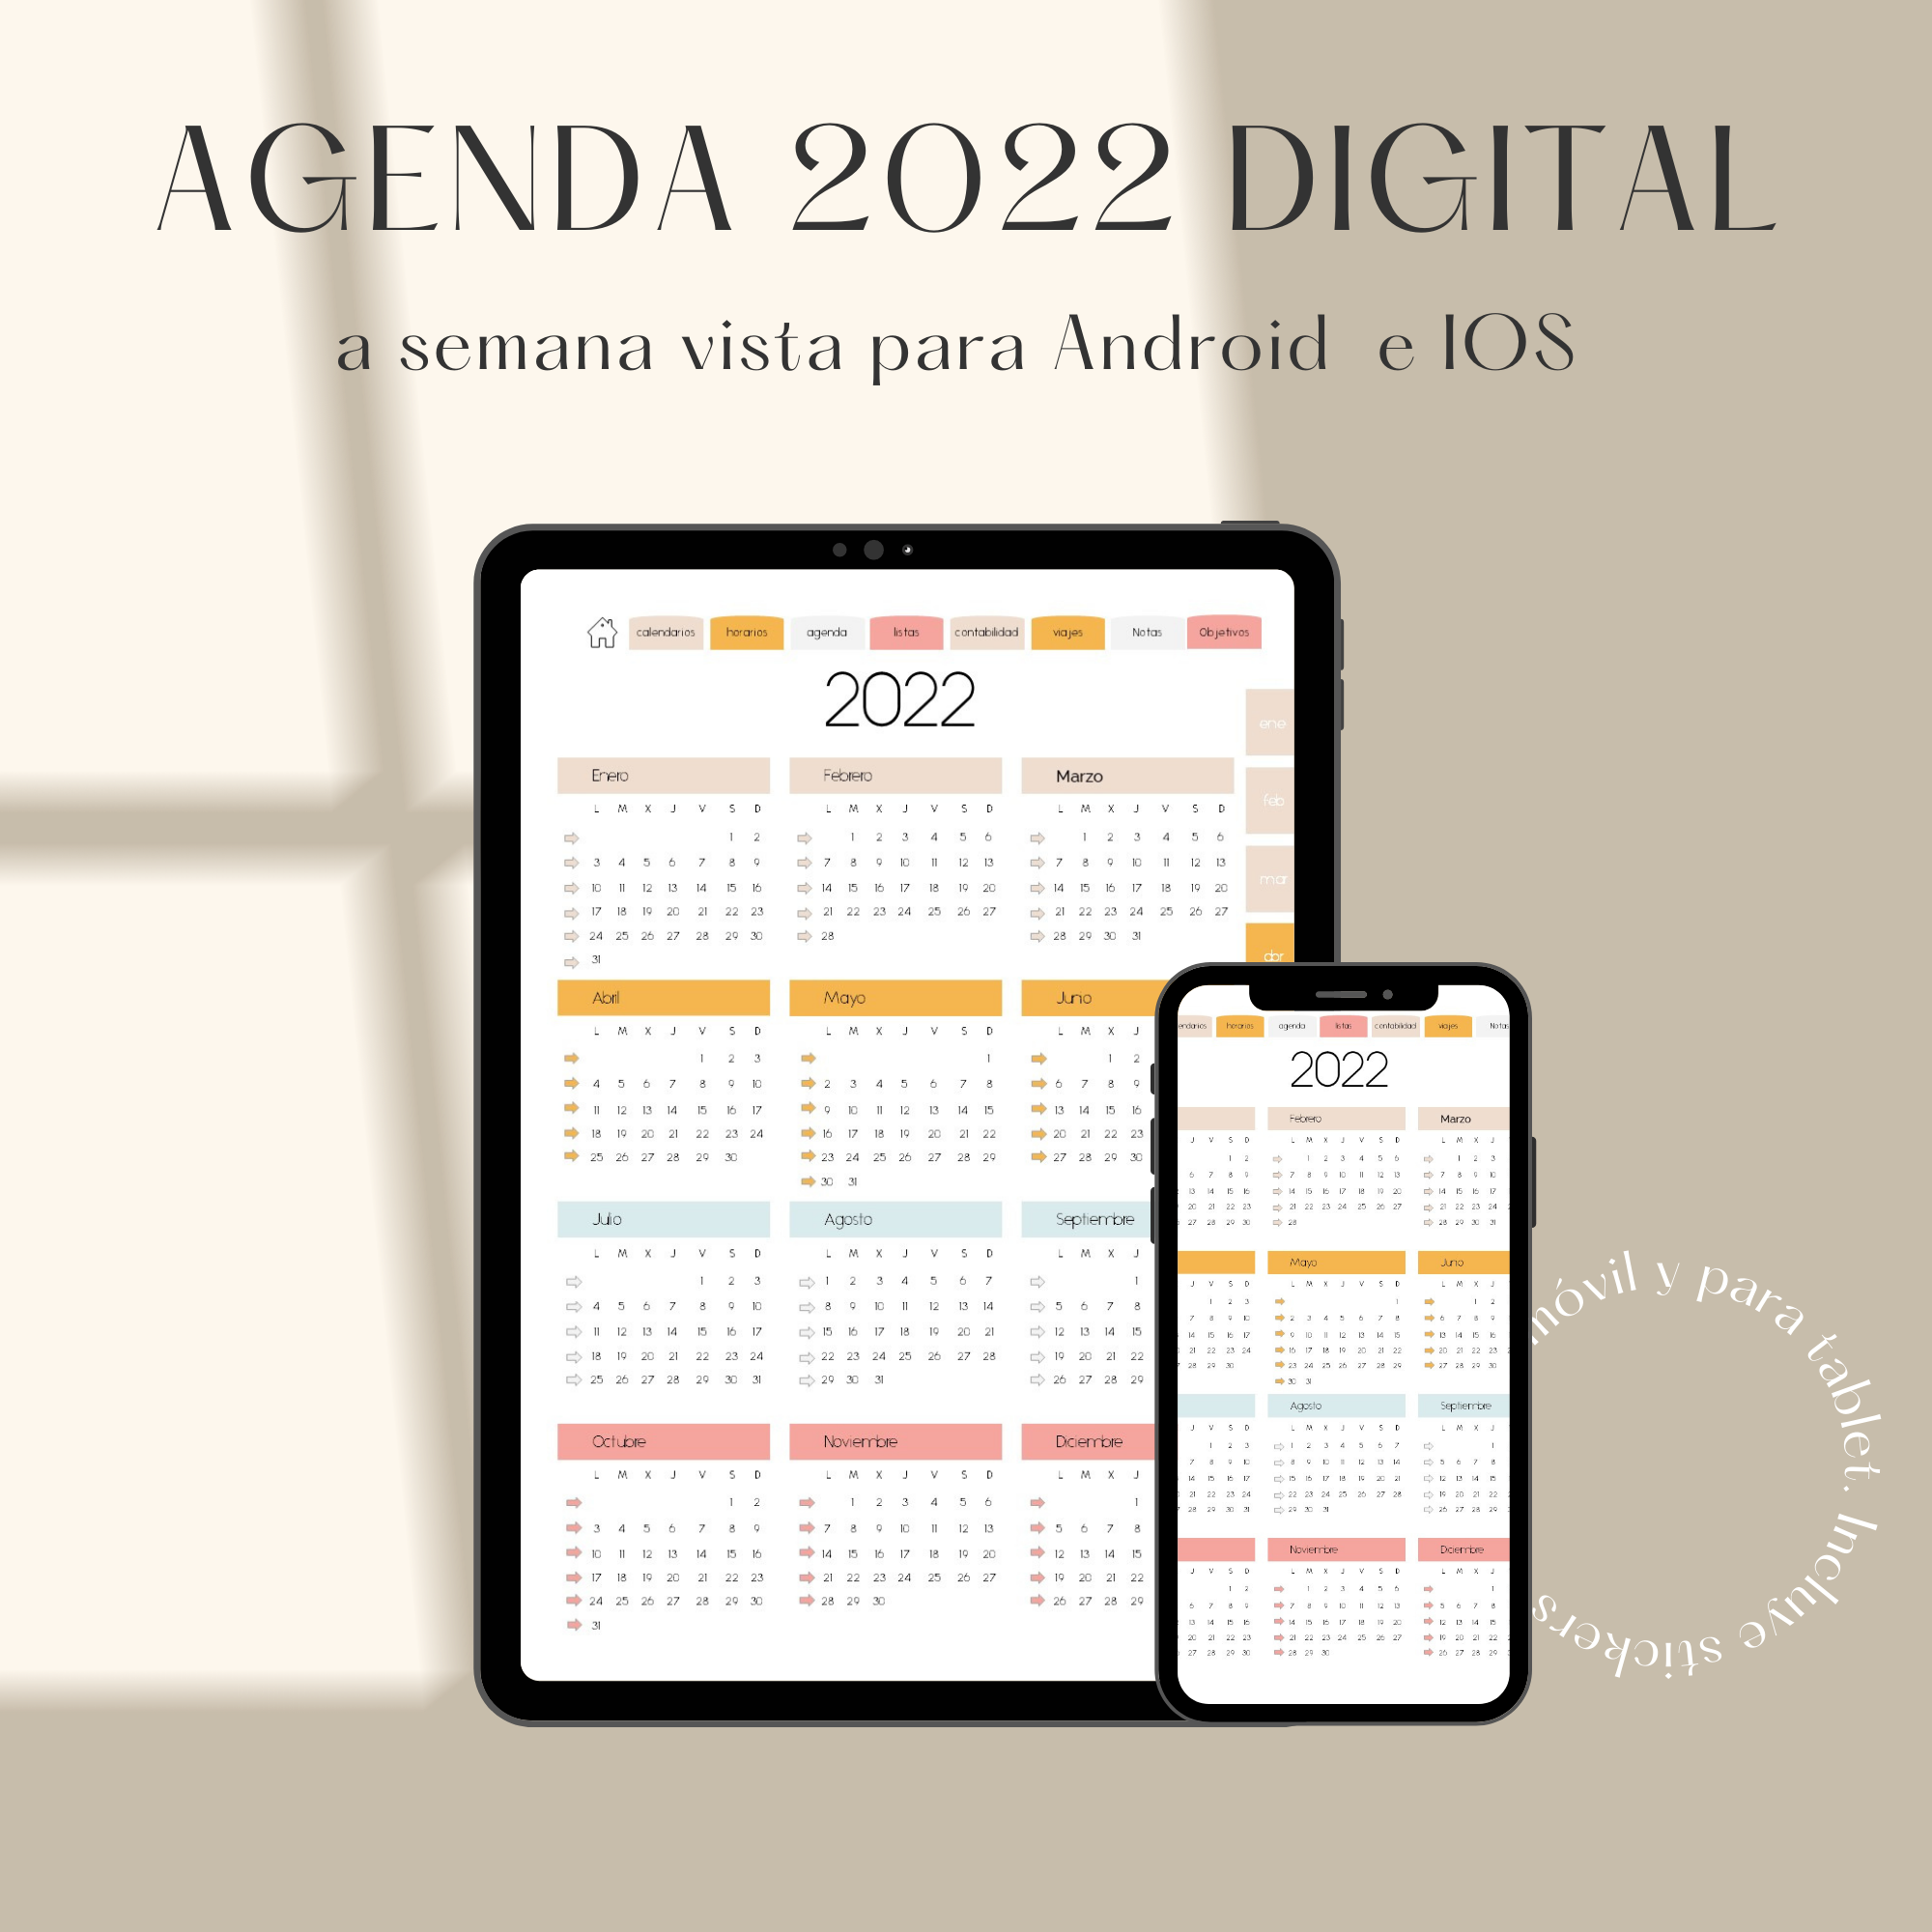 AGENDA DIGITAL 2022 PARA TABLET Y MÓVIL